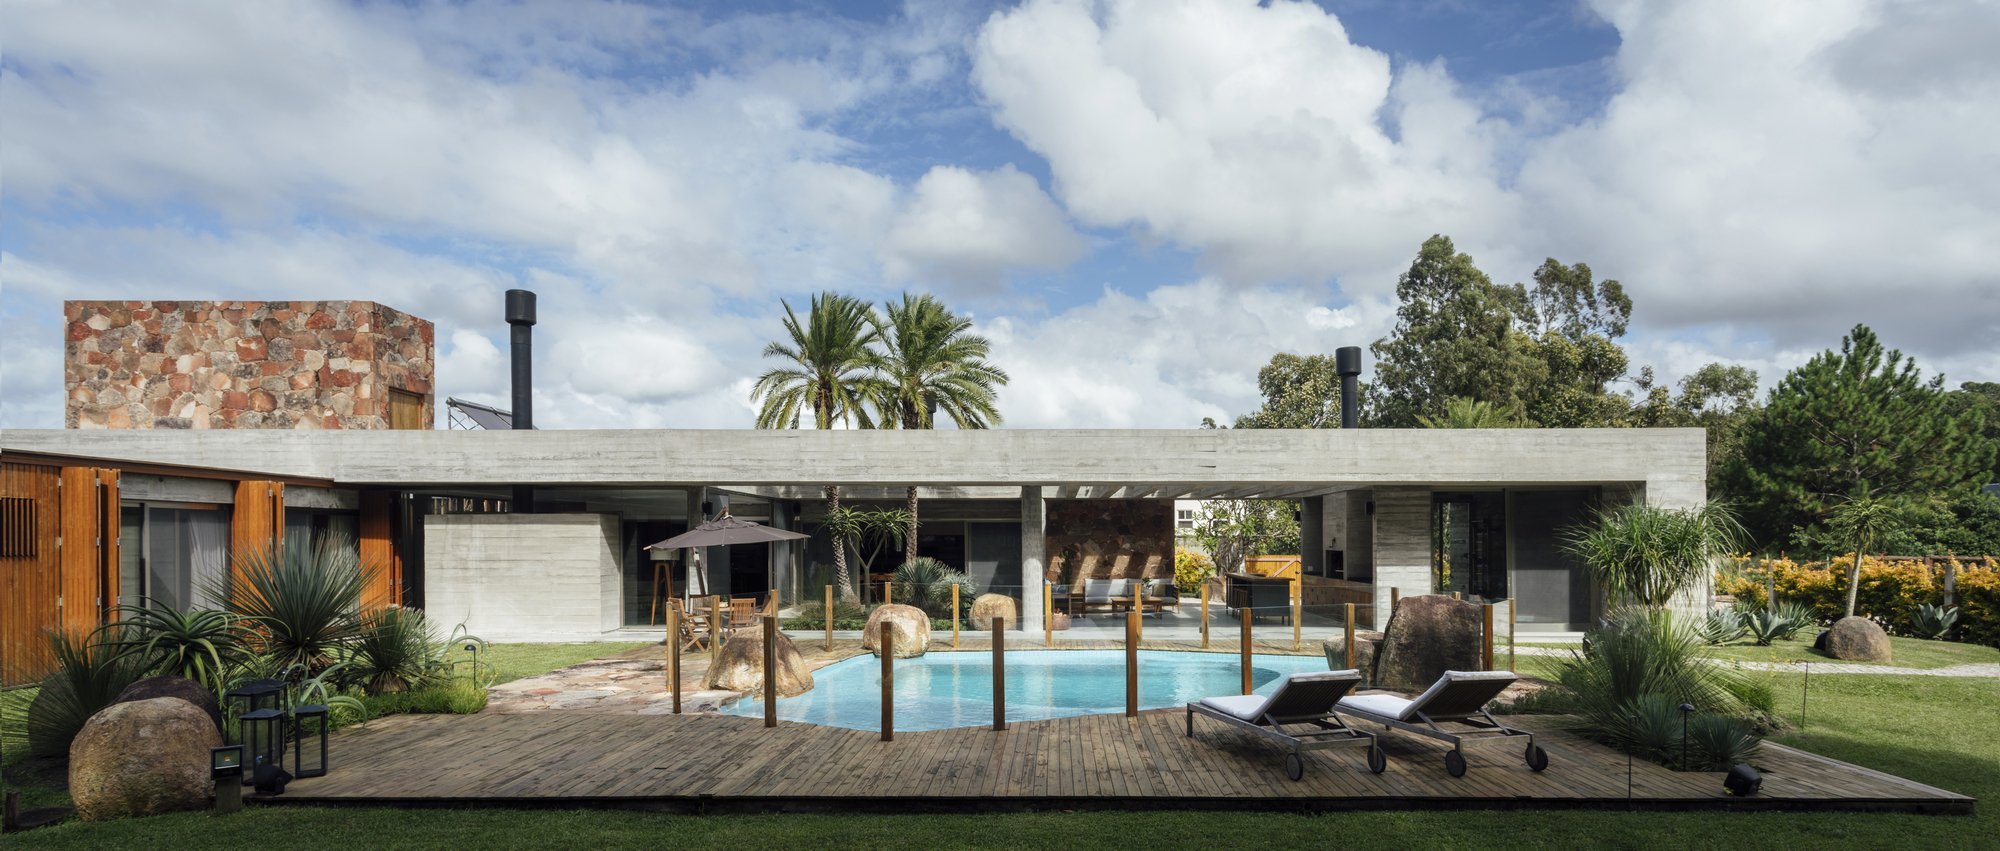 Casa Charqueadas – luxusní vila v Brazílii